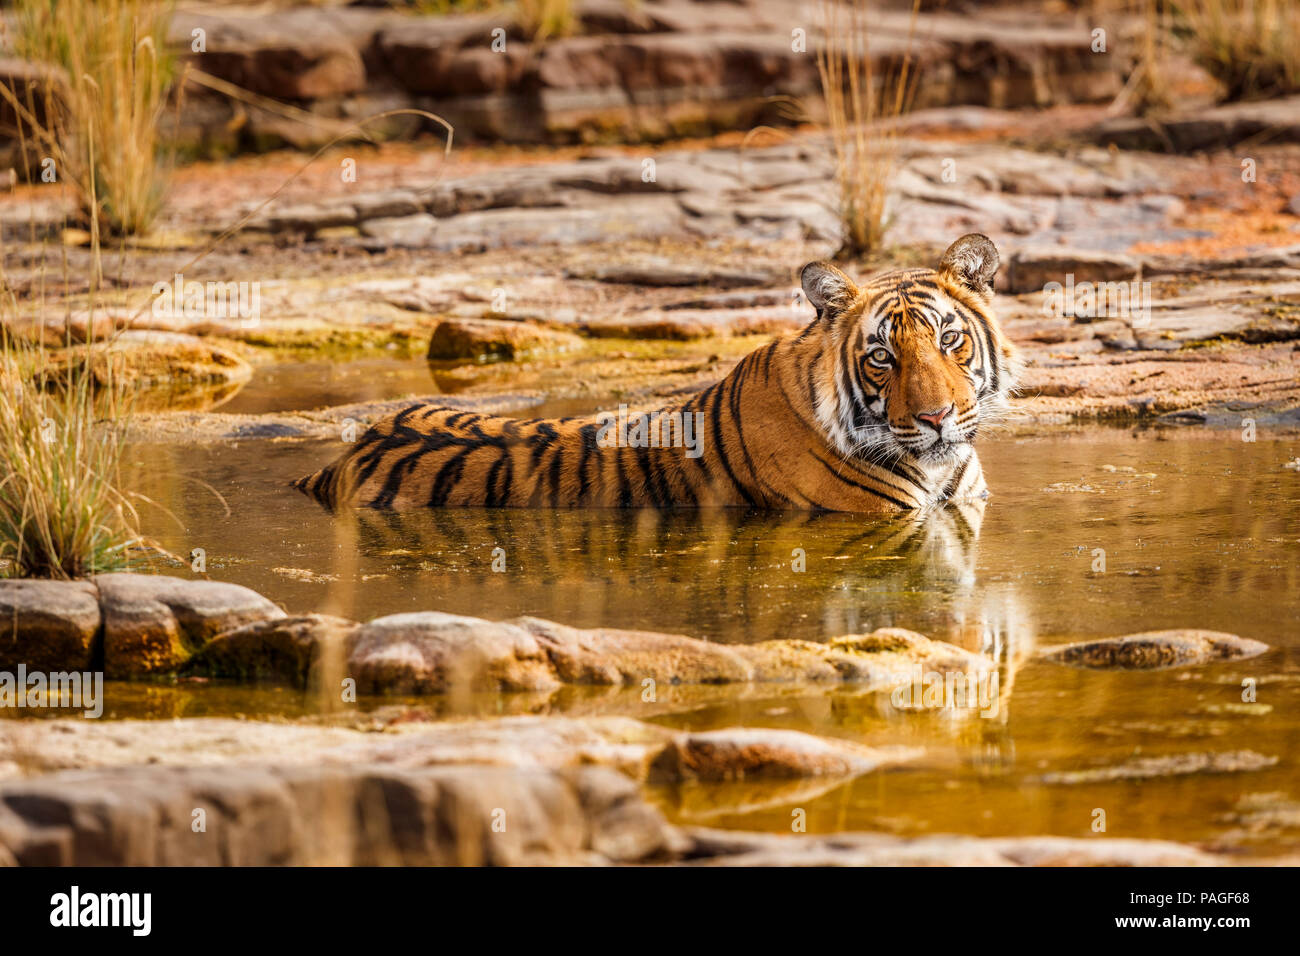 Weibliche Bengal Tiger (Panthera tigris) in Ruhe entspannen, Kühlung im Wasser in der heißen Trockenzeit, Ranthambore Nationalpark, Rajasthan, Nordindien Stockfoto